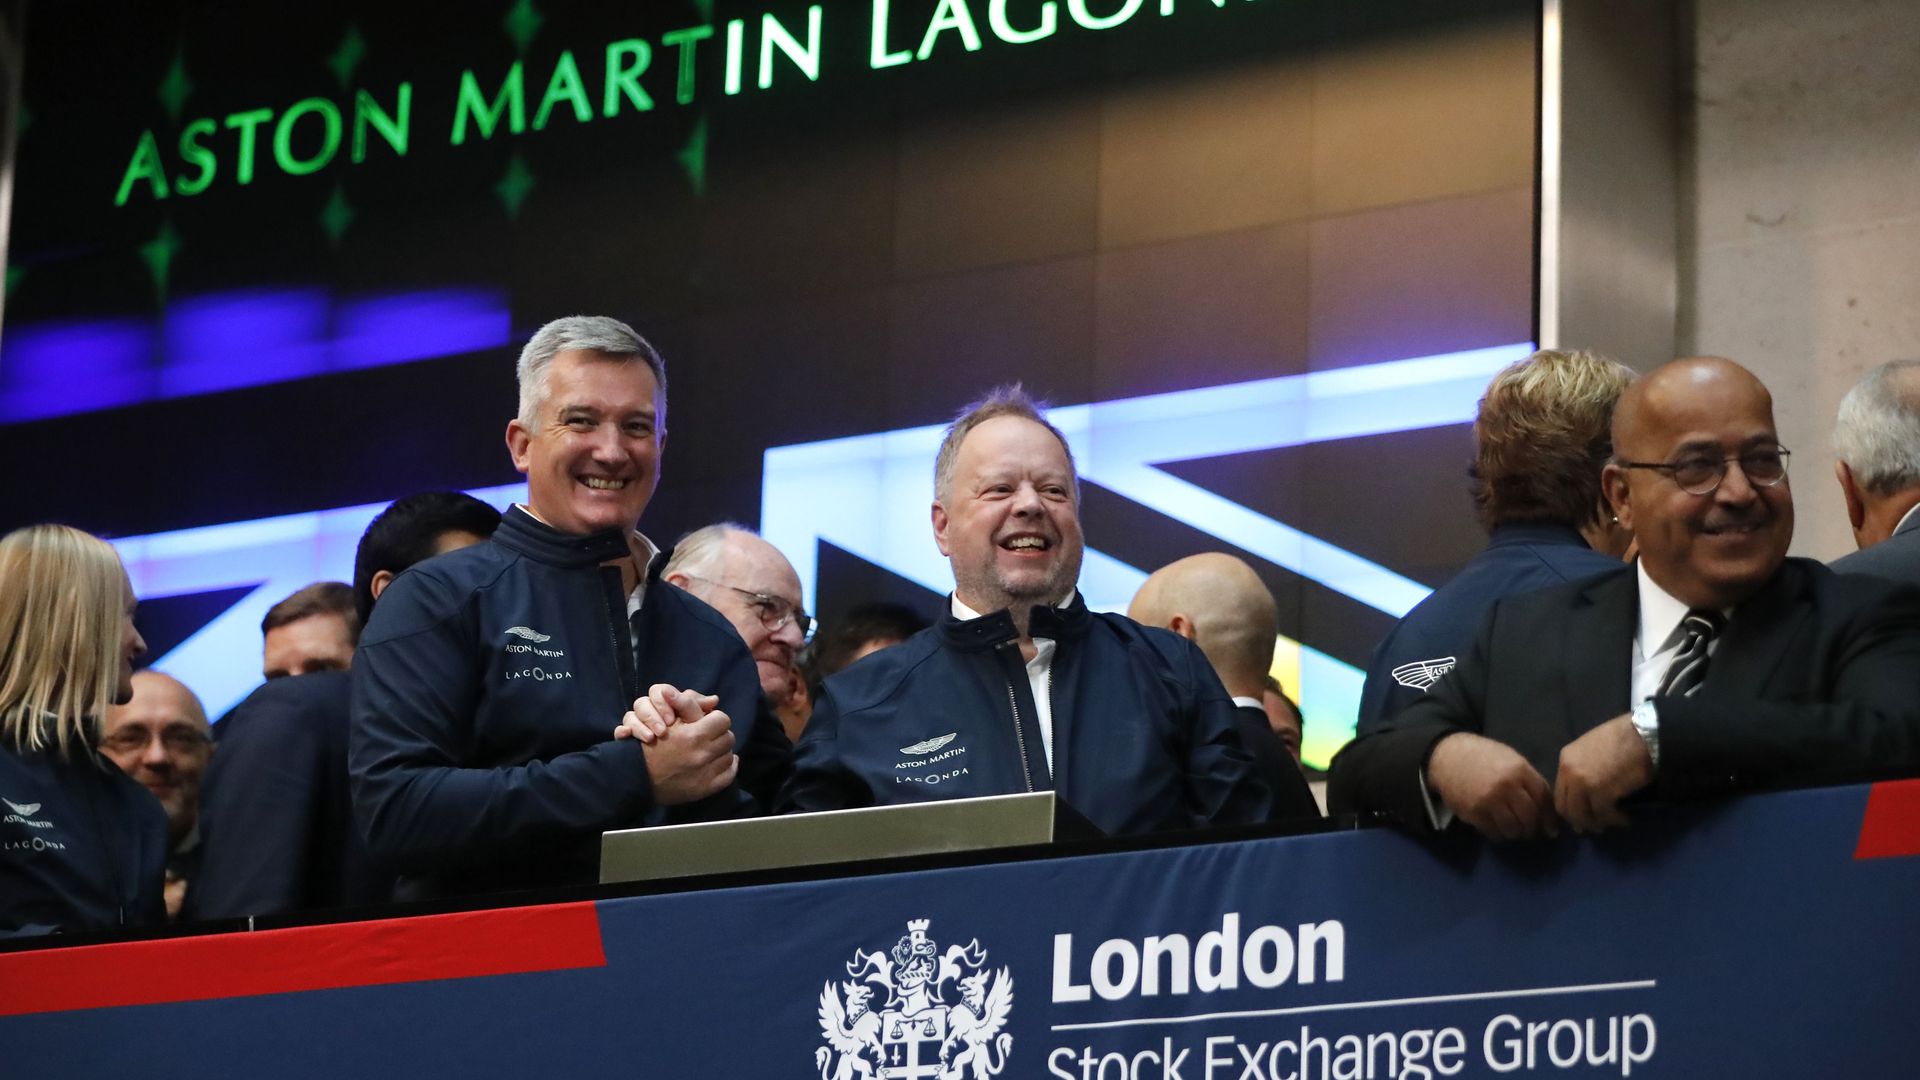 Aston Martin executives celebrate at London Stock Exchange